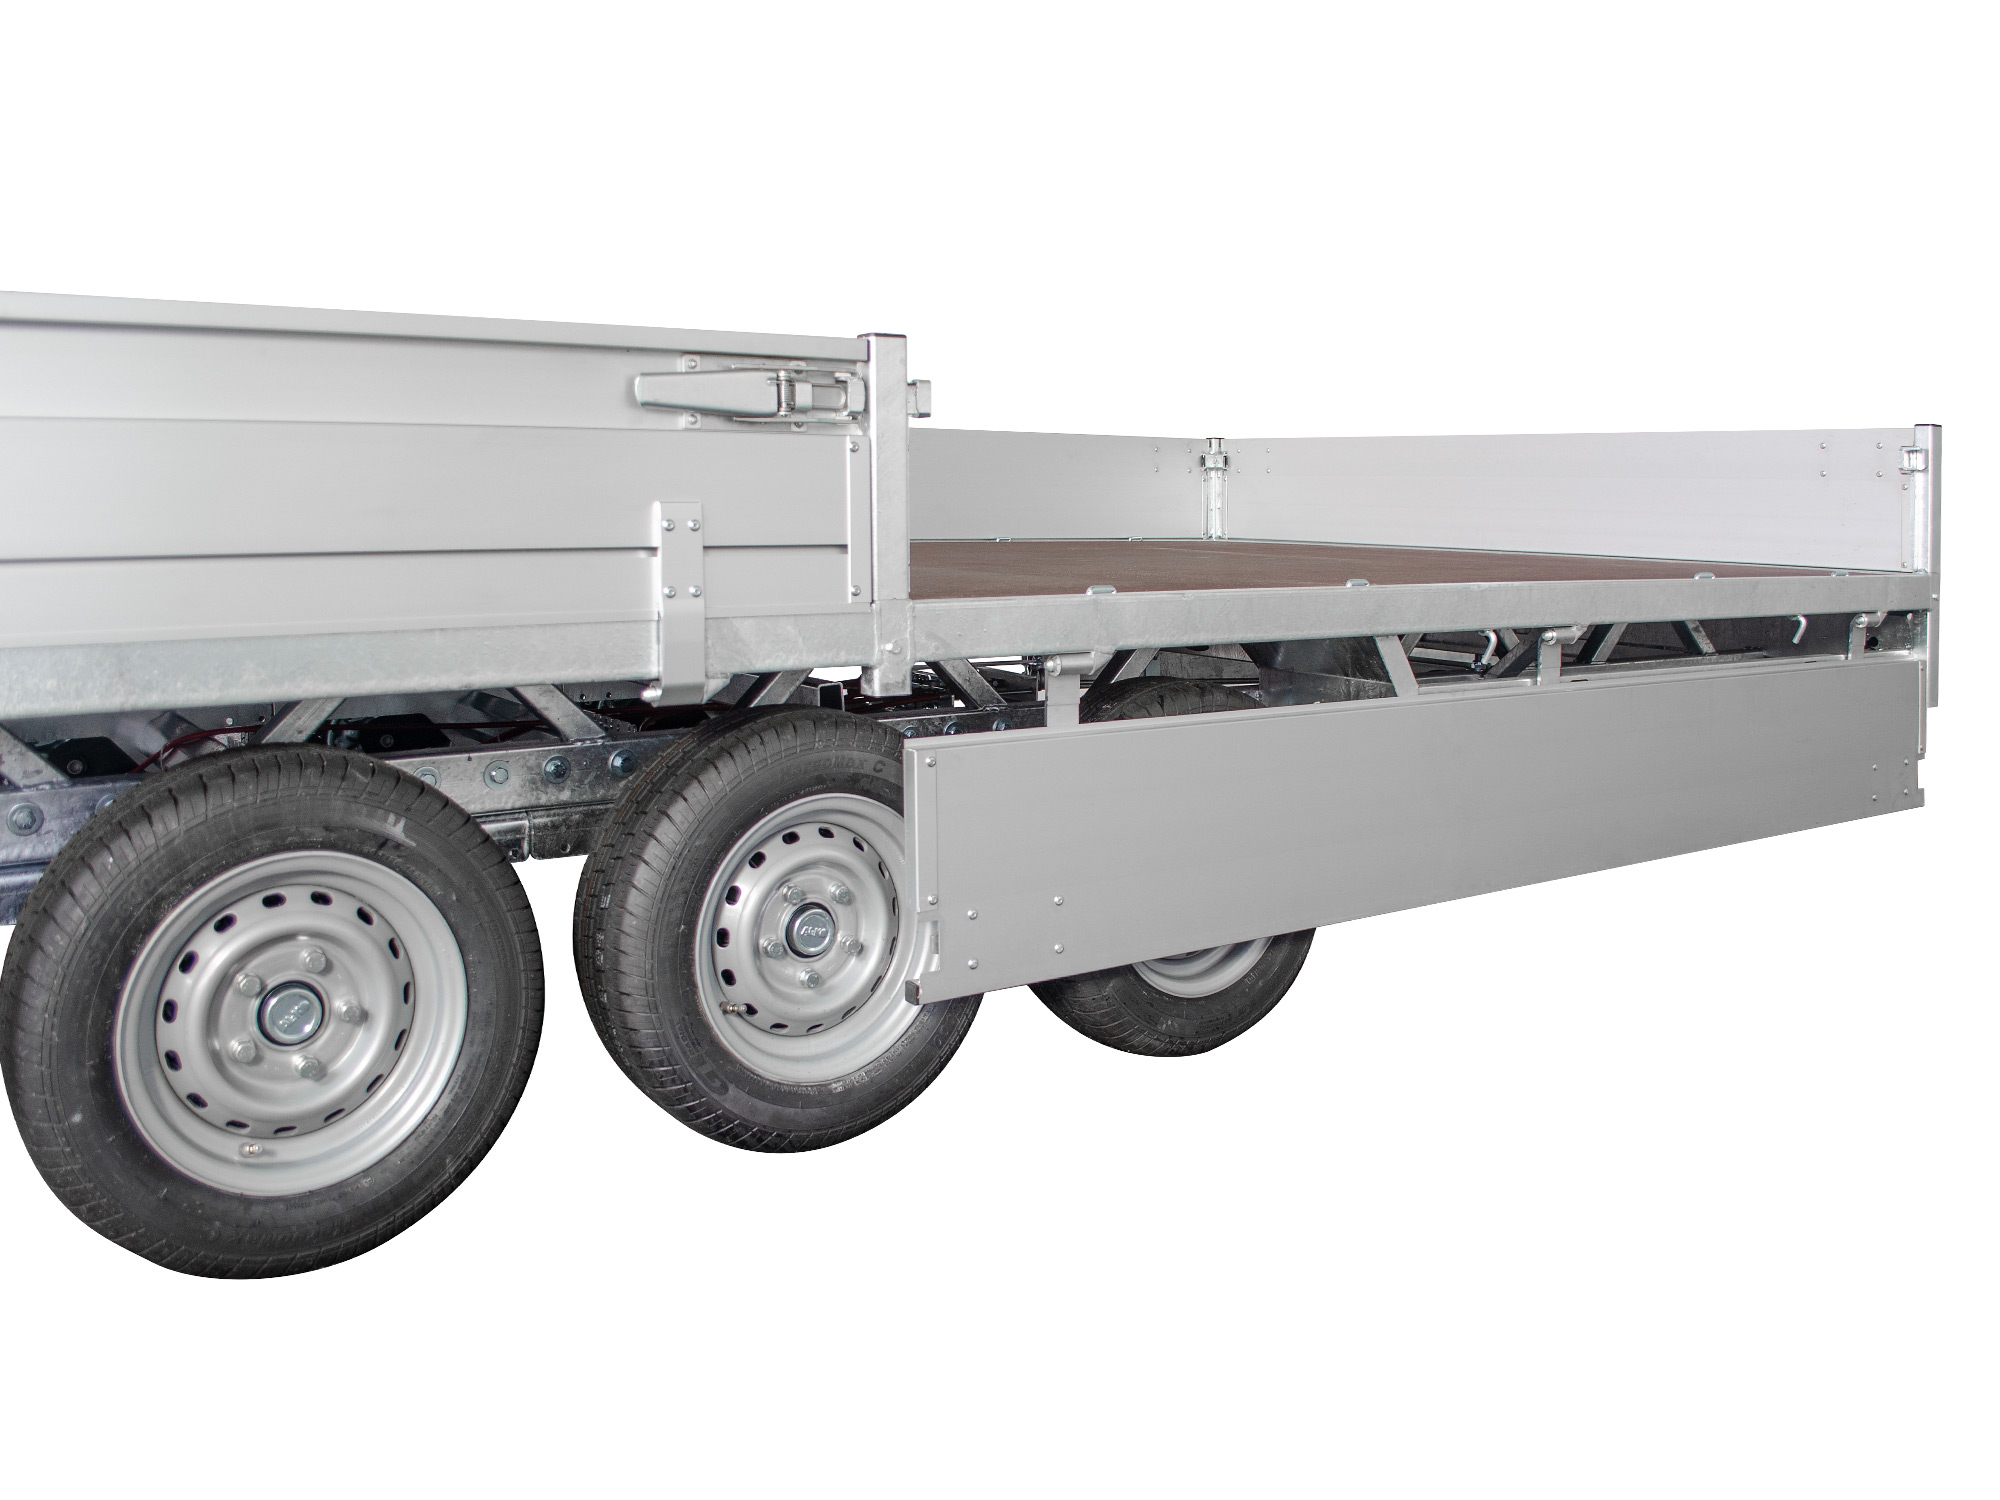 Hulco PKW Anhänger Hochlader Alu 3500 kg, Ladefläche 6,11 x2,03 m - Tridem